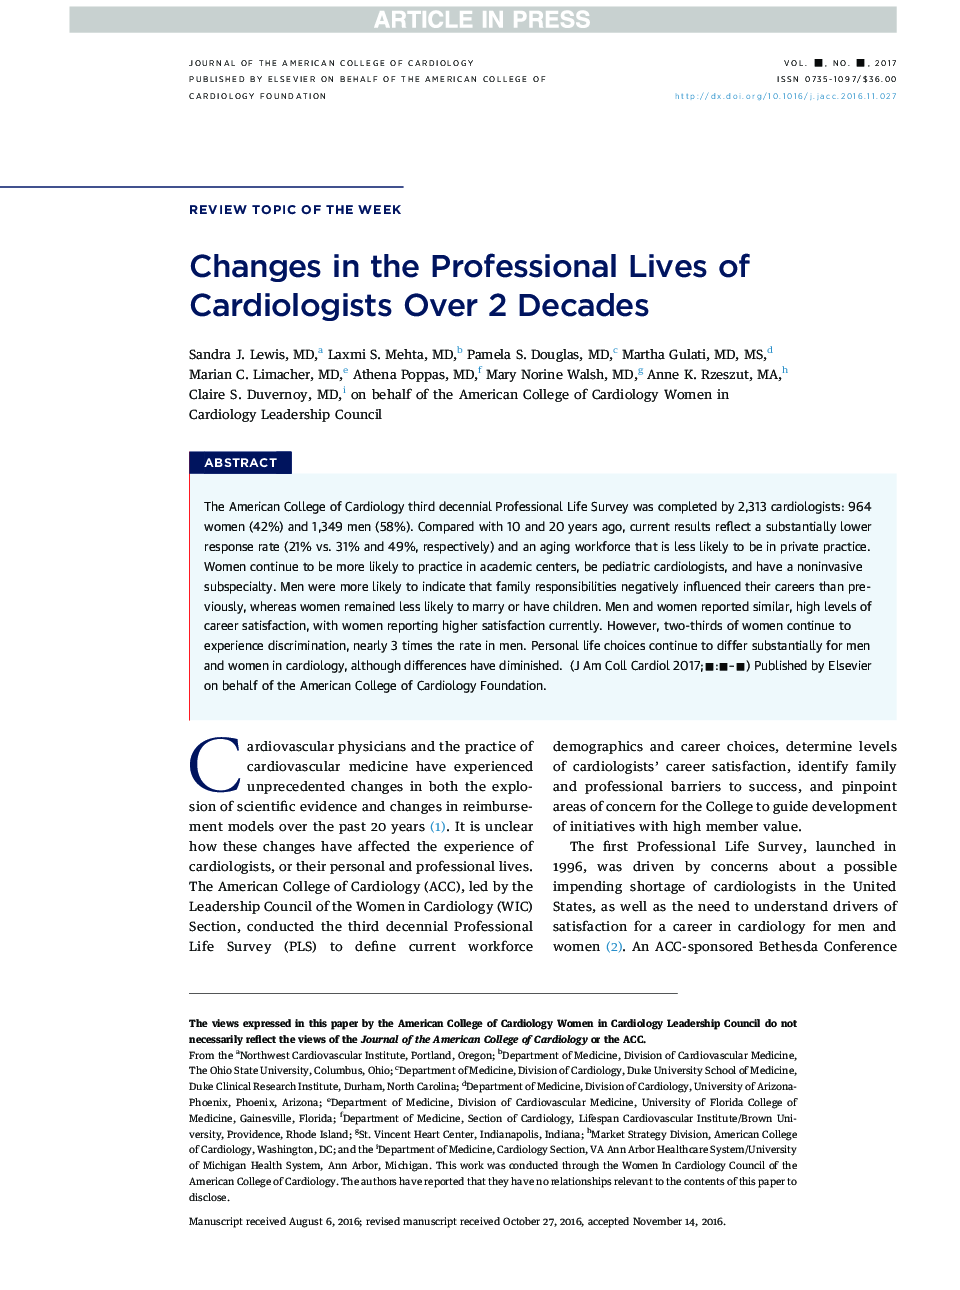 تغییرات در زندگی حرفه ای متخصصین قلب و عروق طی بیش از 2 دهه 